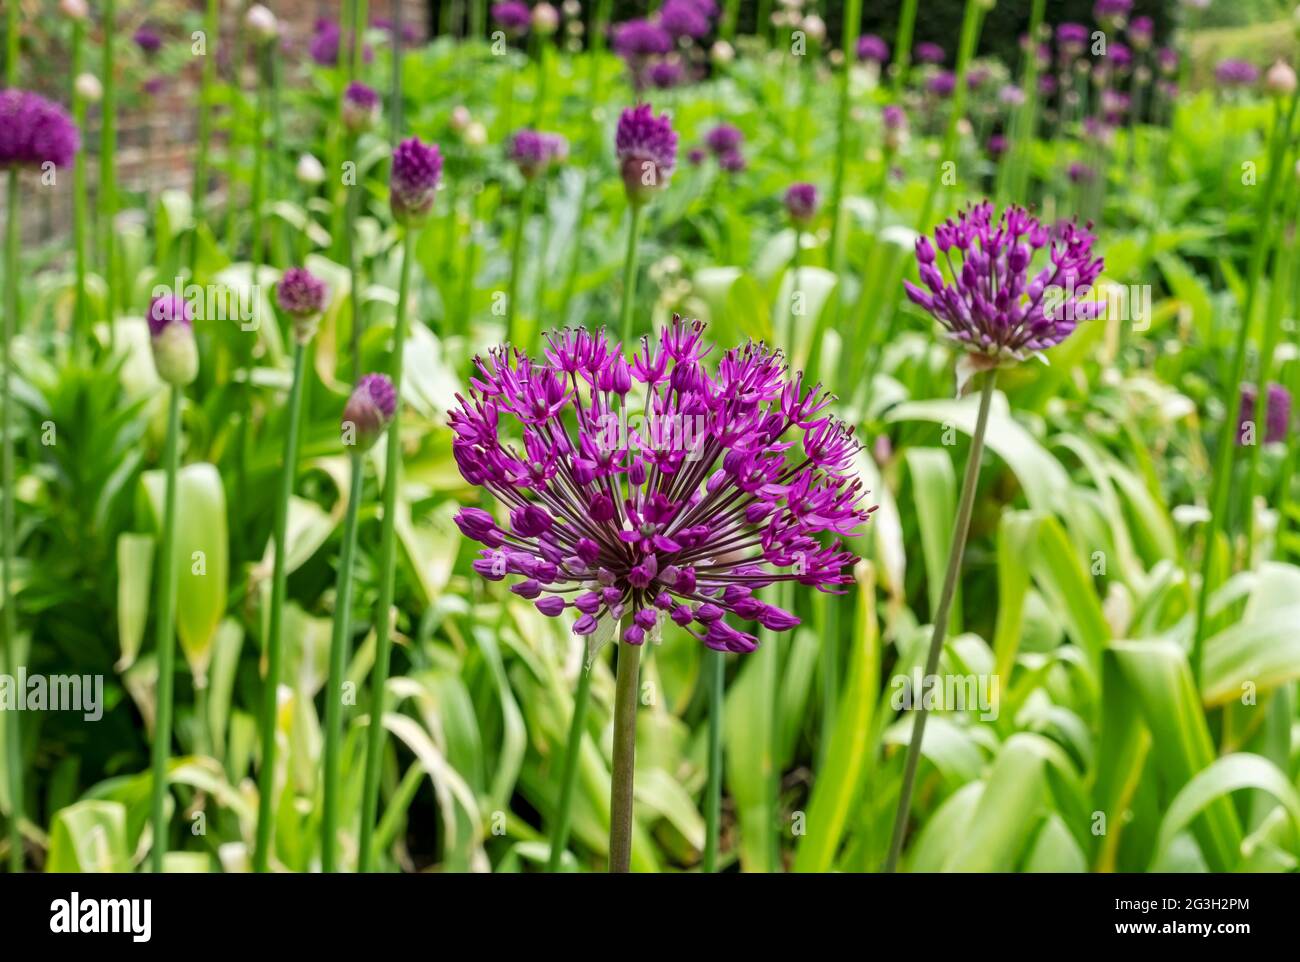 Nahaufnahme von purpurnen Allium-Allium-Blüten blühen in einem Blumengarten im Sommer England Vereinigtes Königreich GB Großbritannien Stockfoto